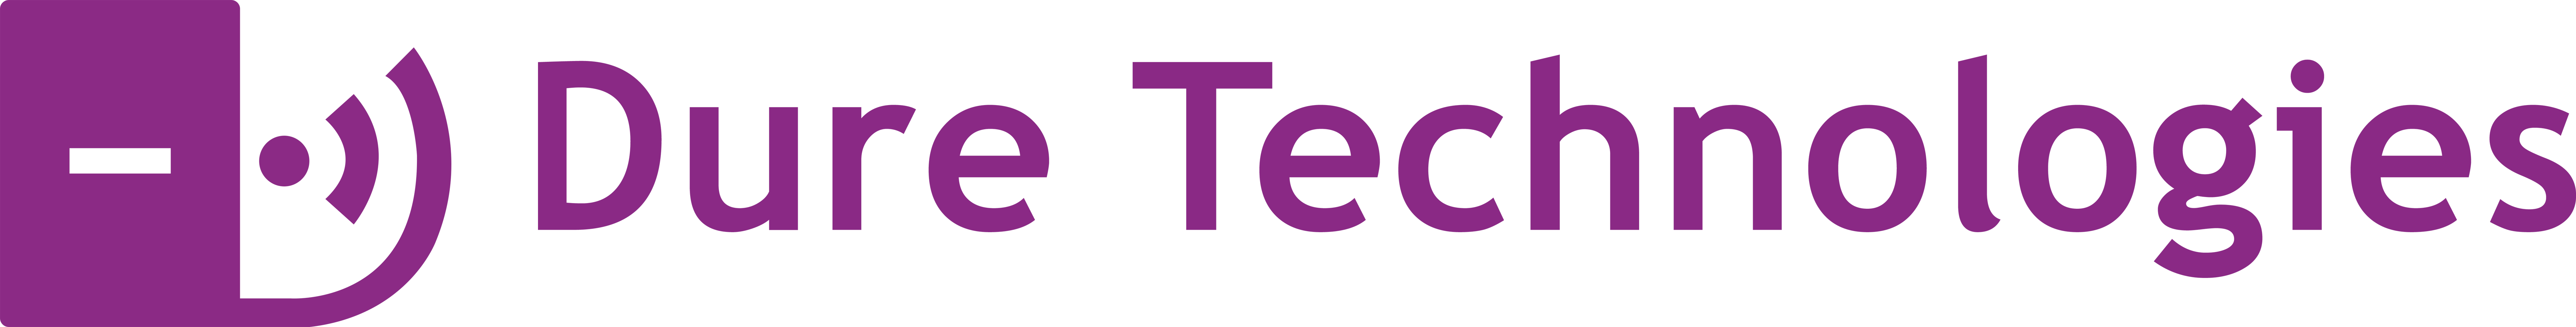 dure logo purple transparent